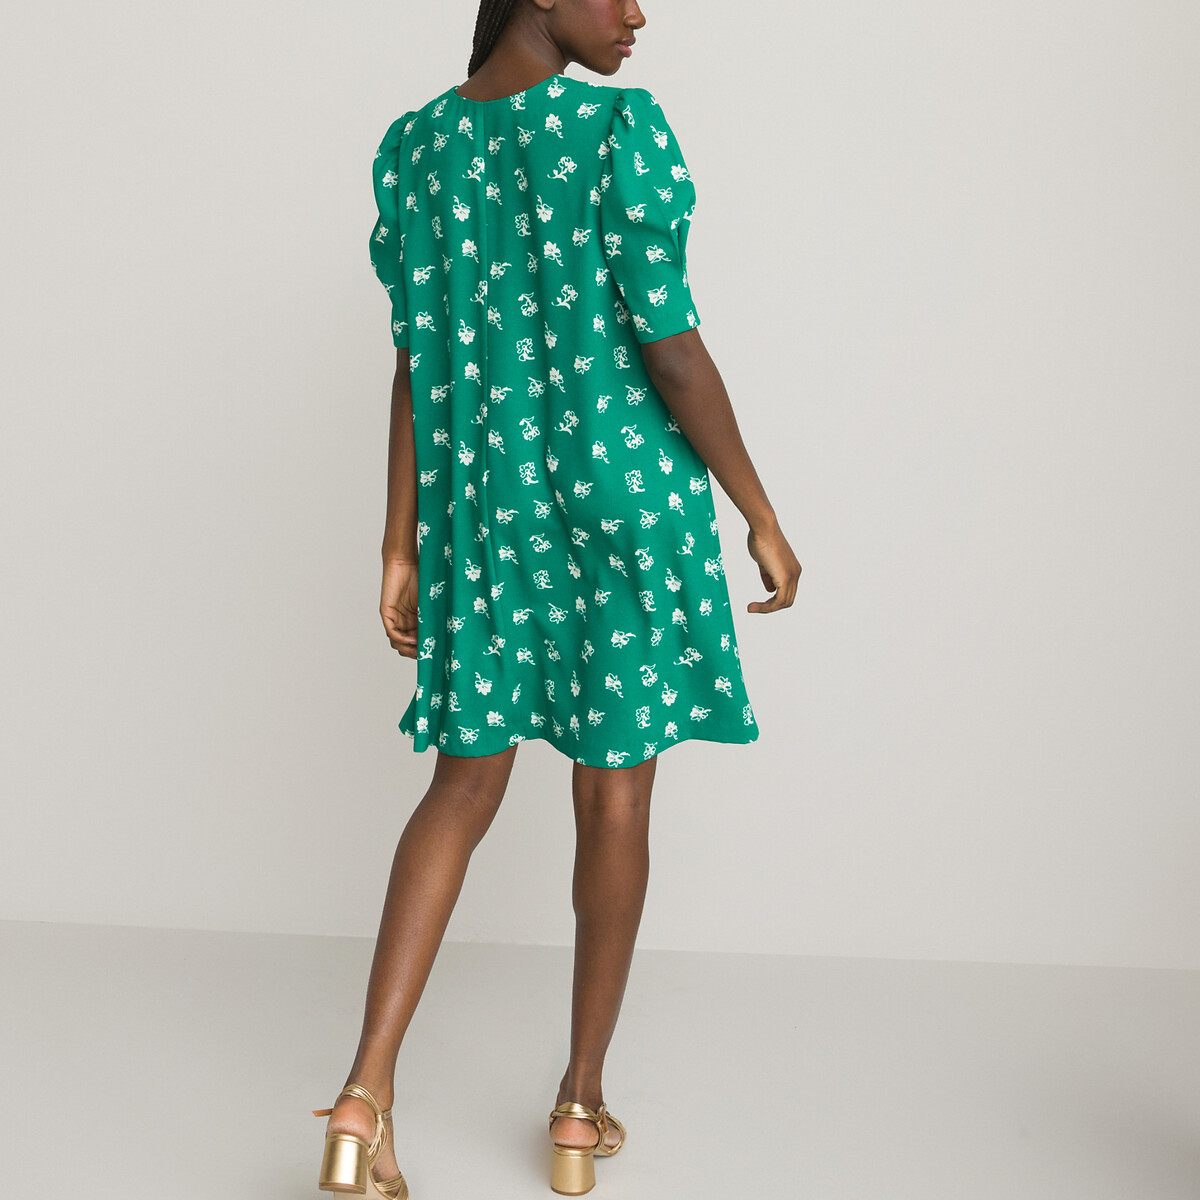 Платье Расклешенное с V-образным вырезом короткими рукавами и принтом 58 зеленый LaRedoute, размер 58 - фото 4